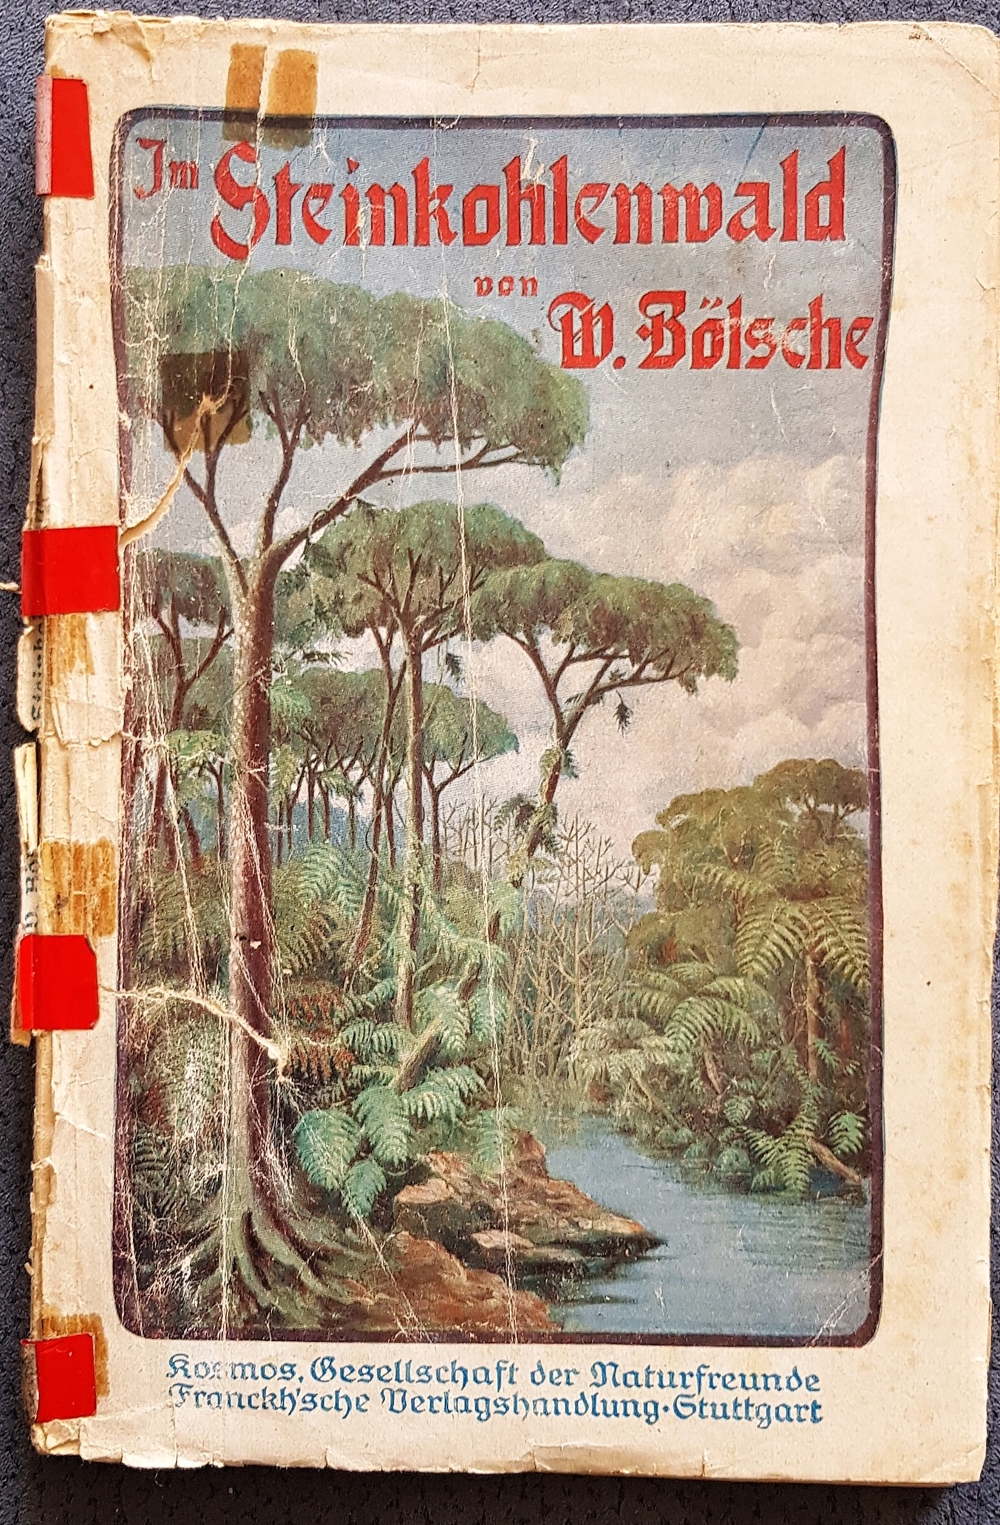 Taschenbuch "Im Steinkohlewald" von W. Bölsche, ca. 1920